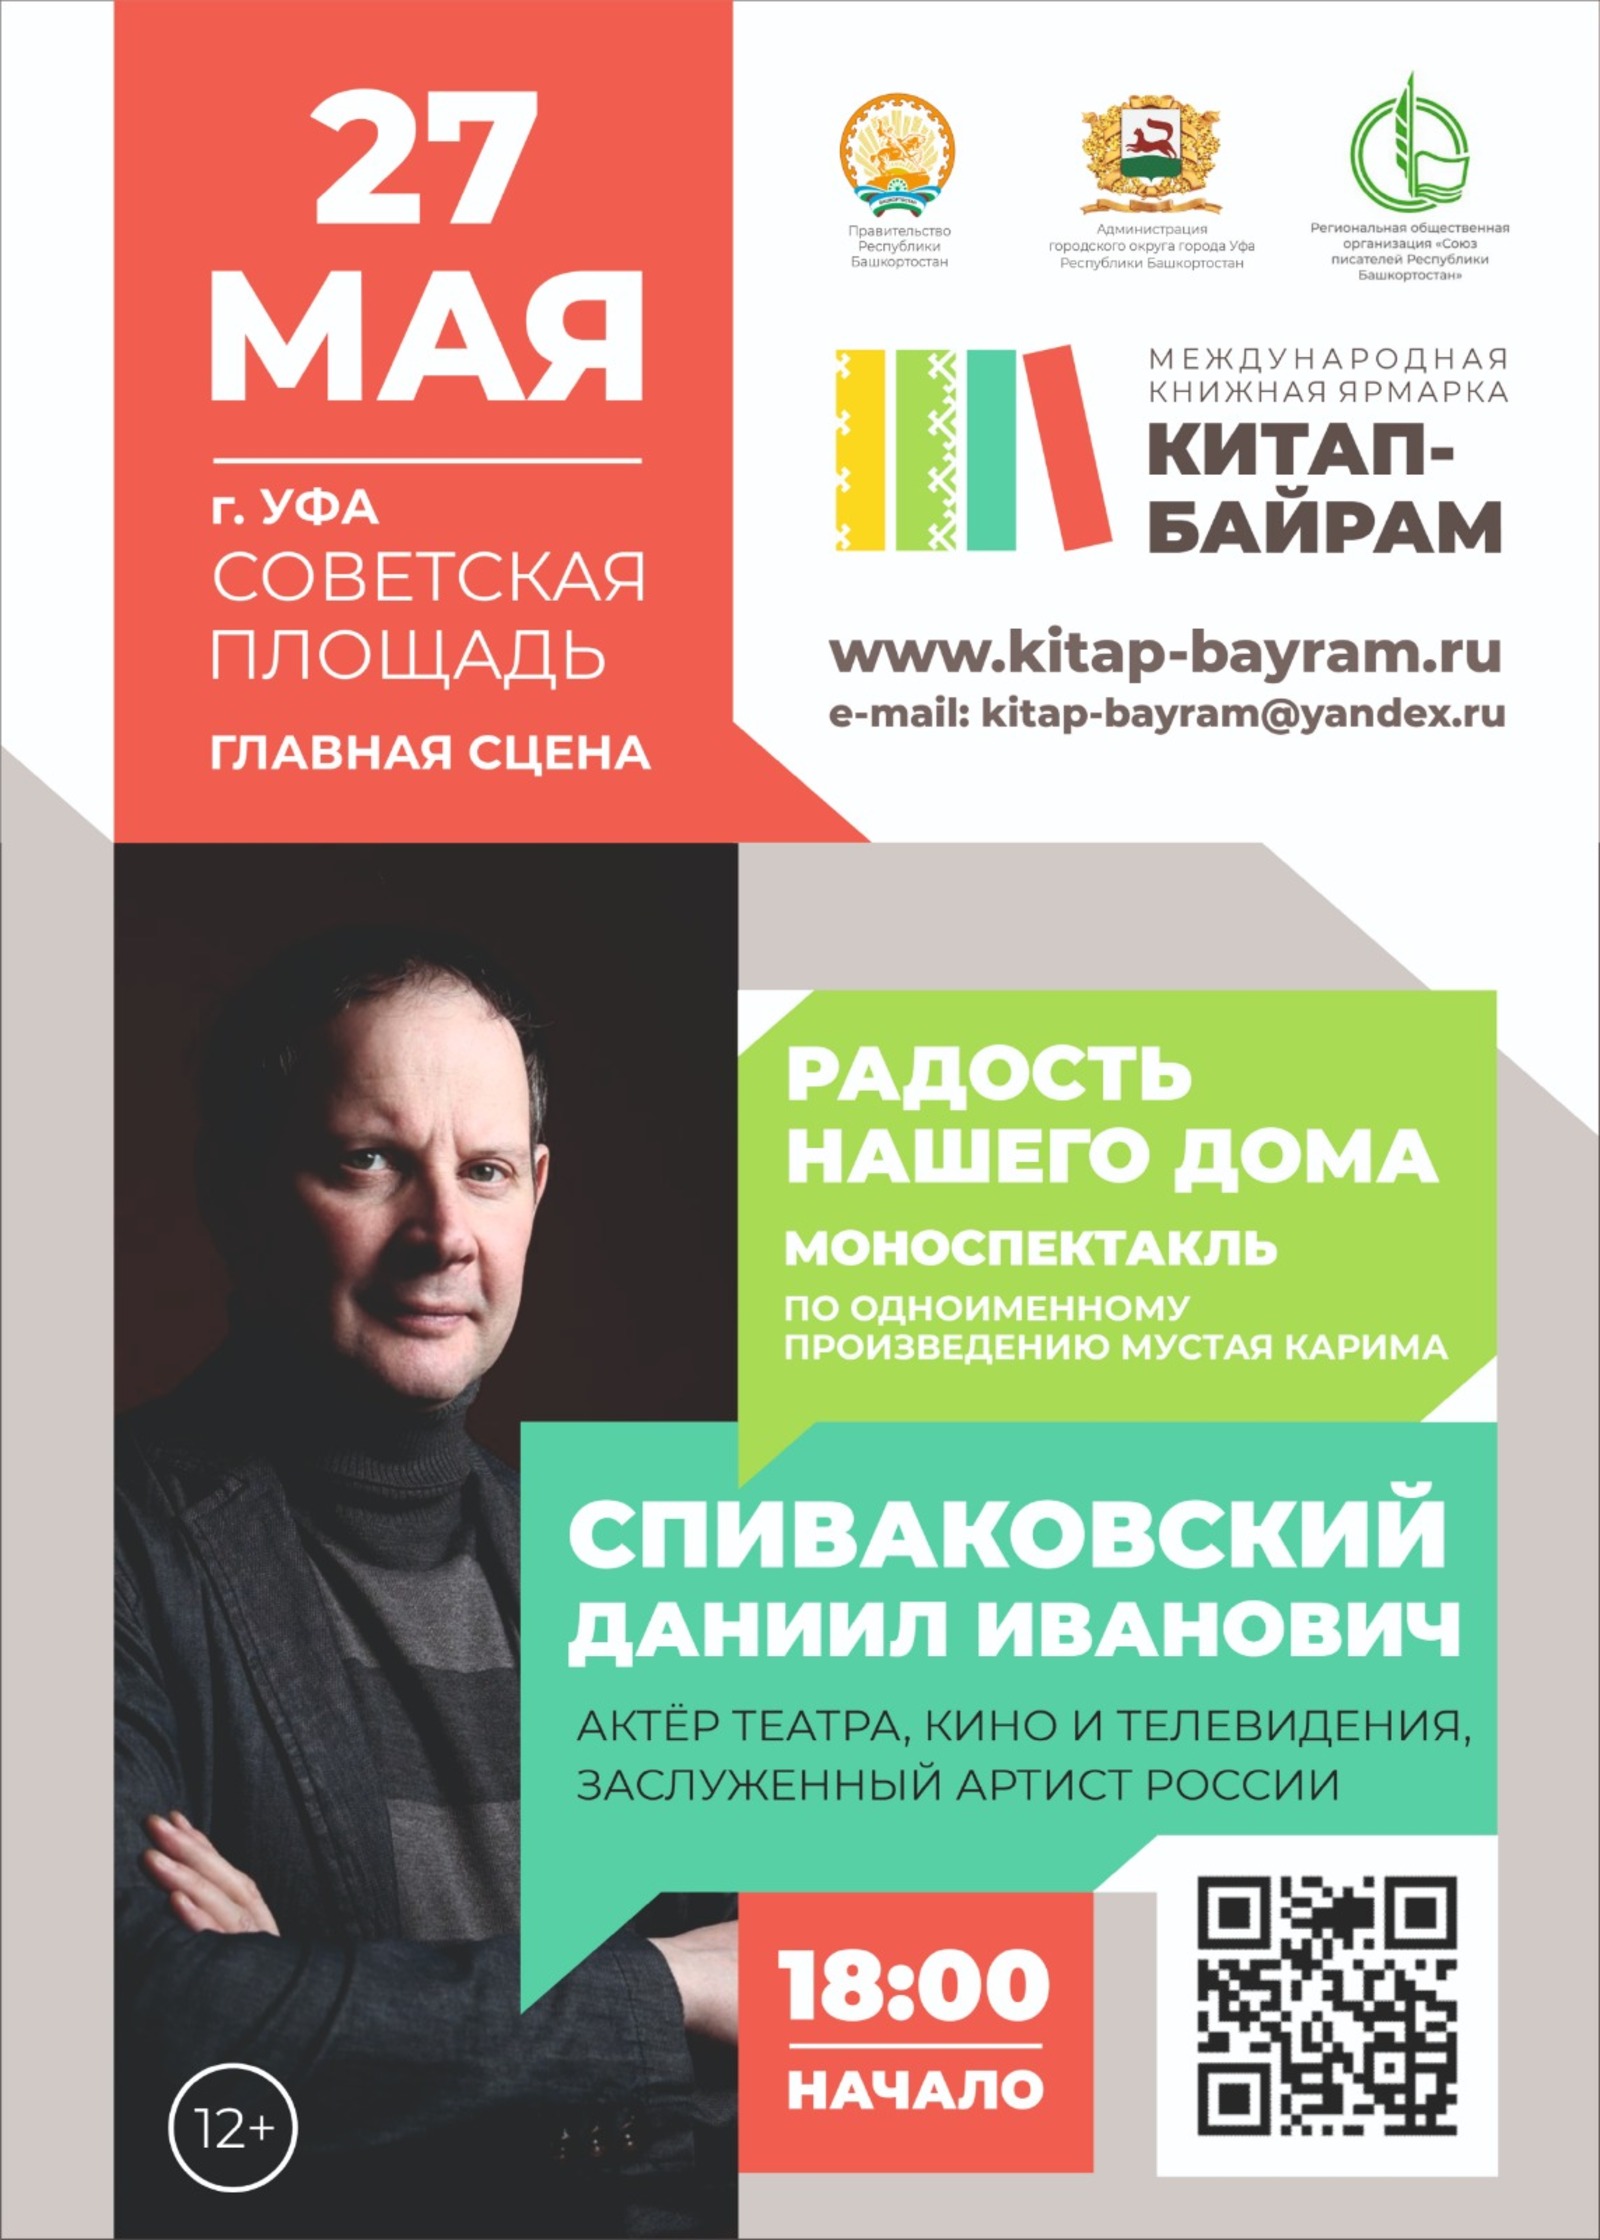 Совсем скоро в Башкирии пройдет книжная ярмарка «Китап-байрам»